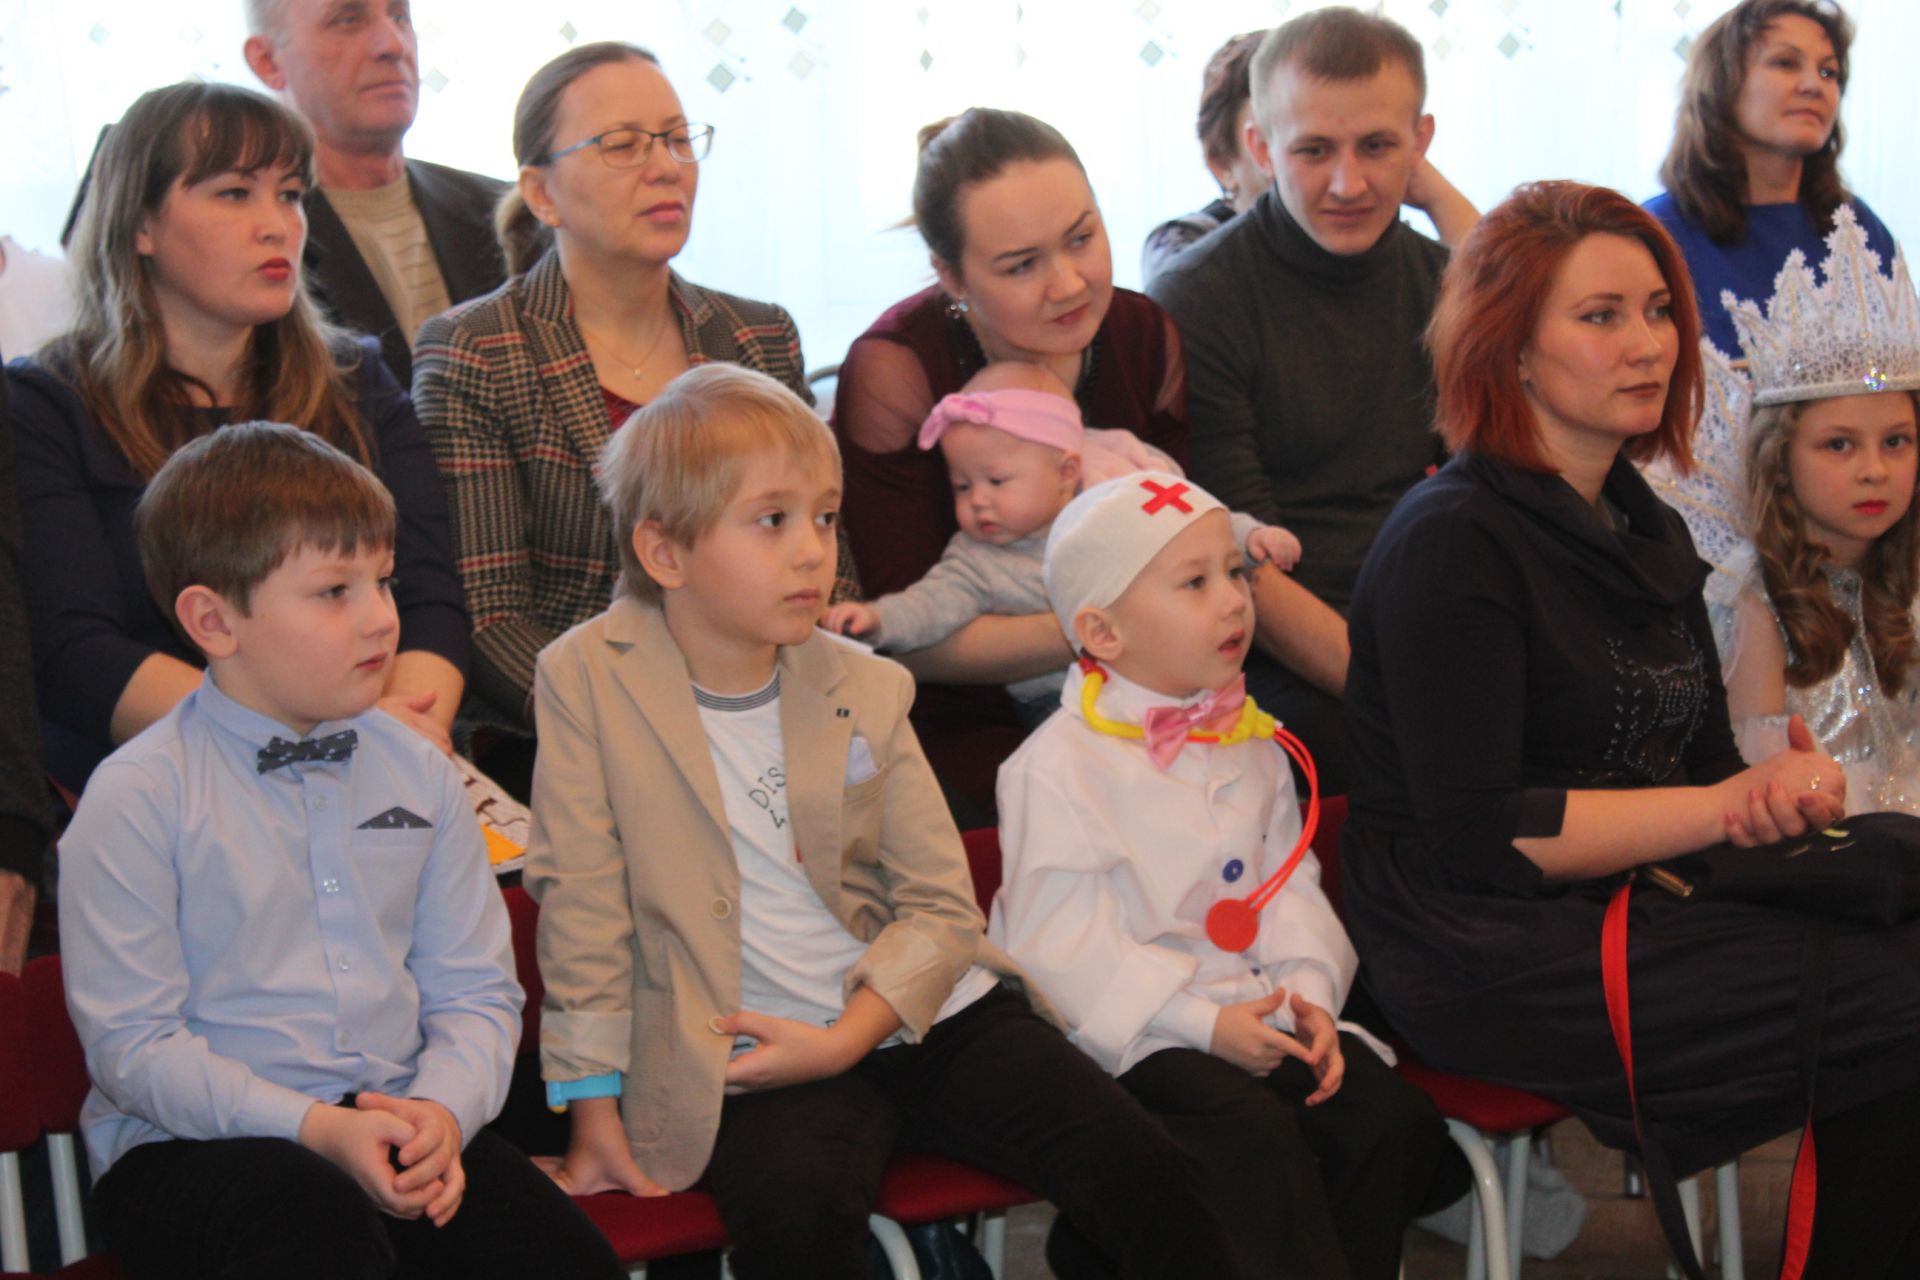 Менделеевскида мәктәпкәчә яшьтәге балалар арасында «Син – уникаль!» II республика конкурсы узды